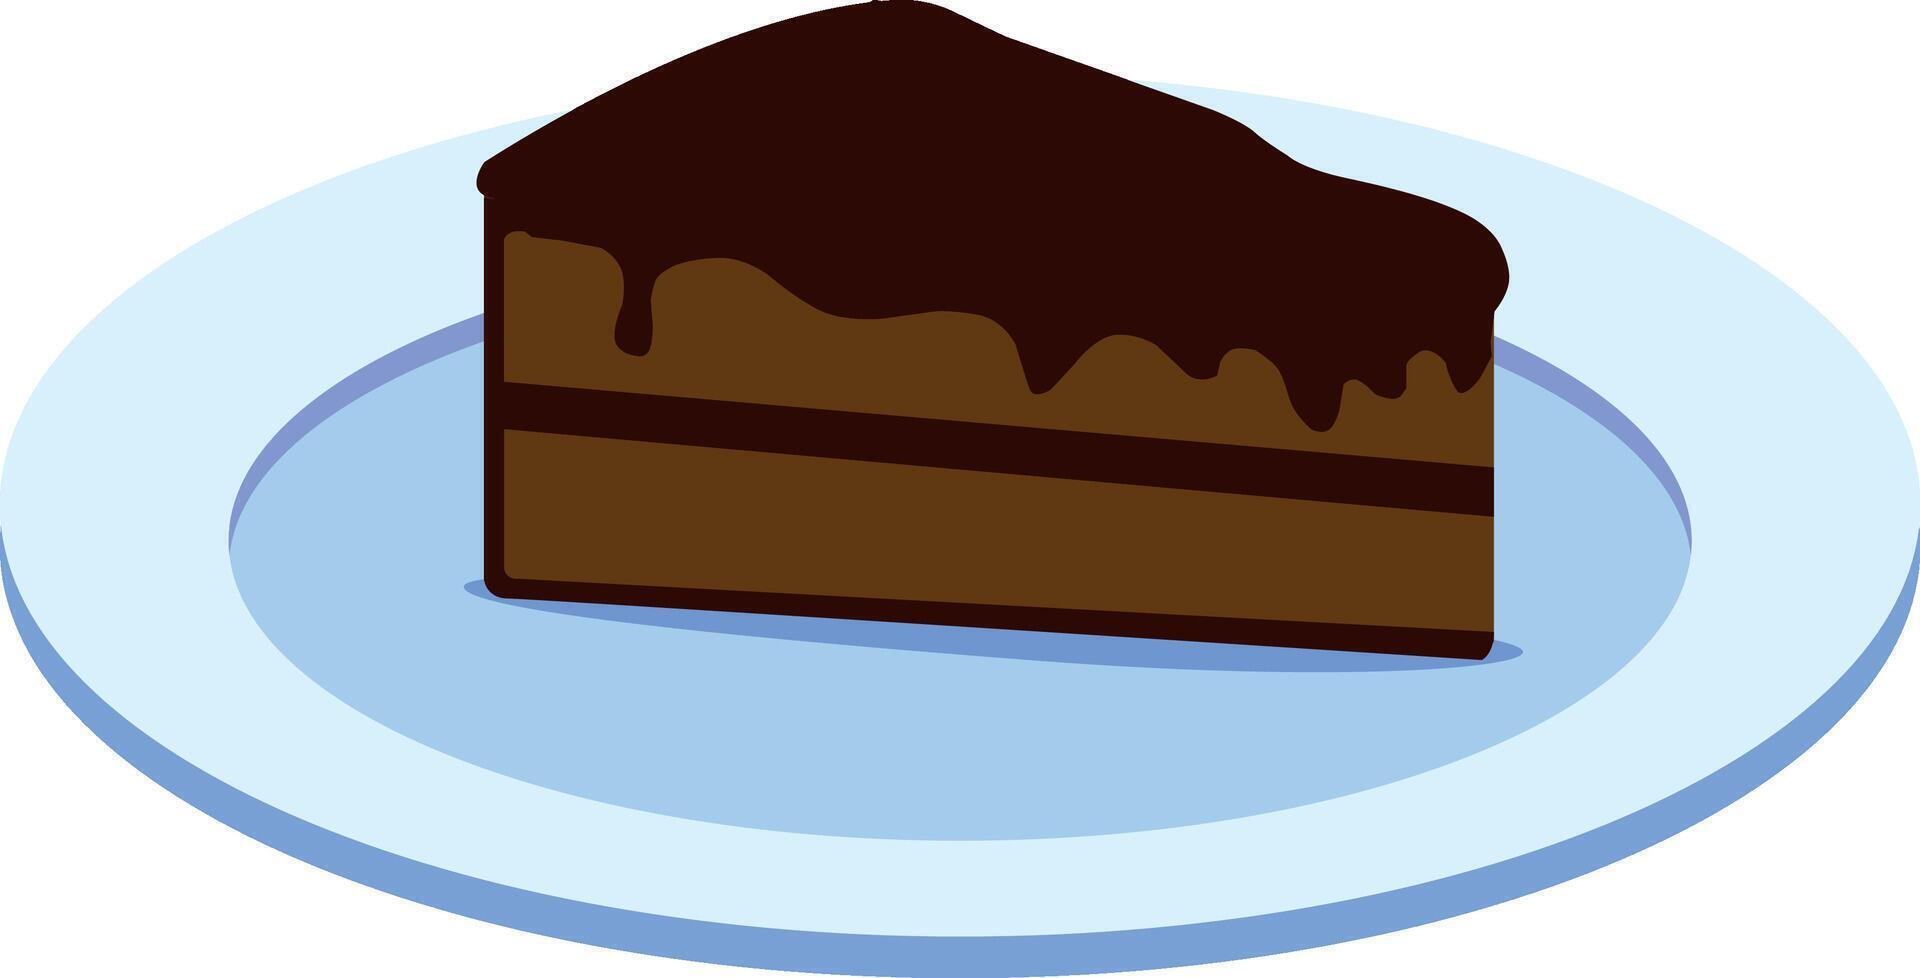 plak chocola taart vector kunst illustratie tekenfilm ontwerp